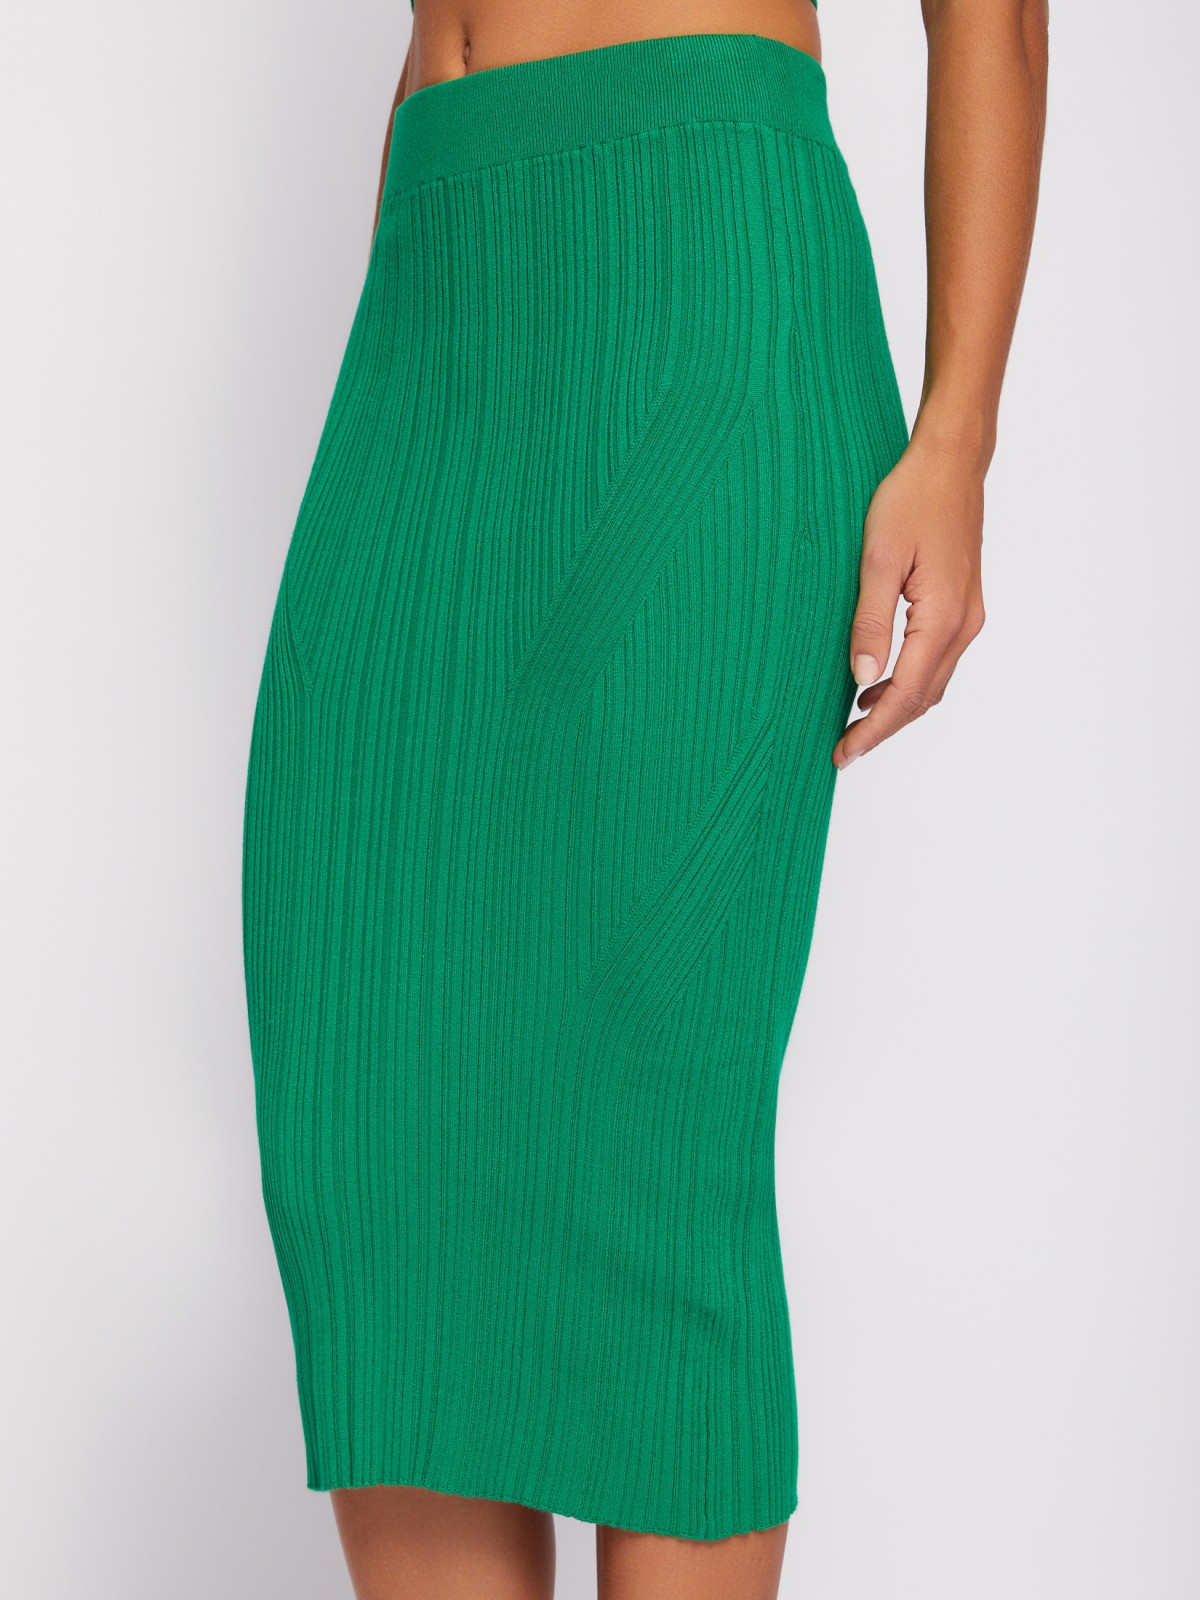 Трикотажная юбка-карандаш длины миди на резинке zolla 024217701031, цвет зеленый, размер L - фото 3